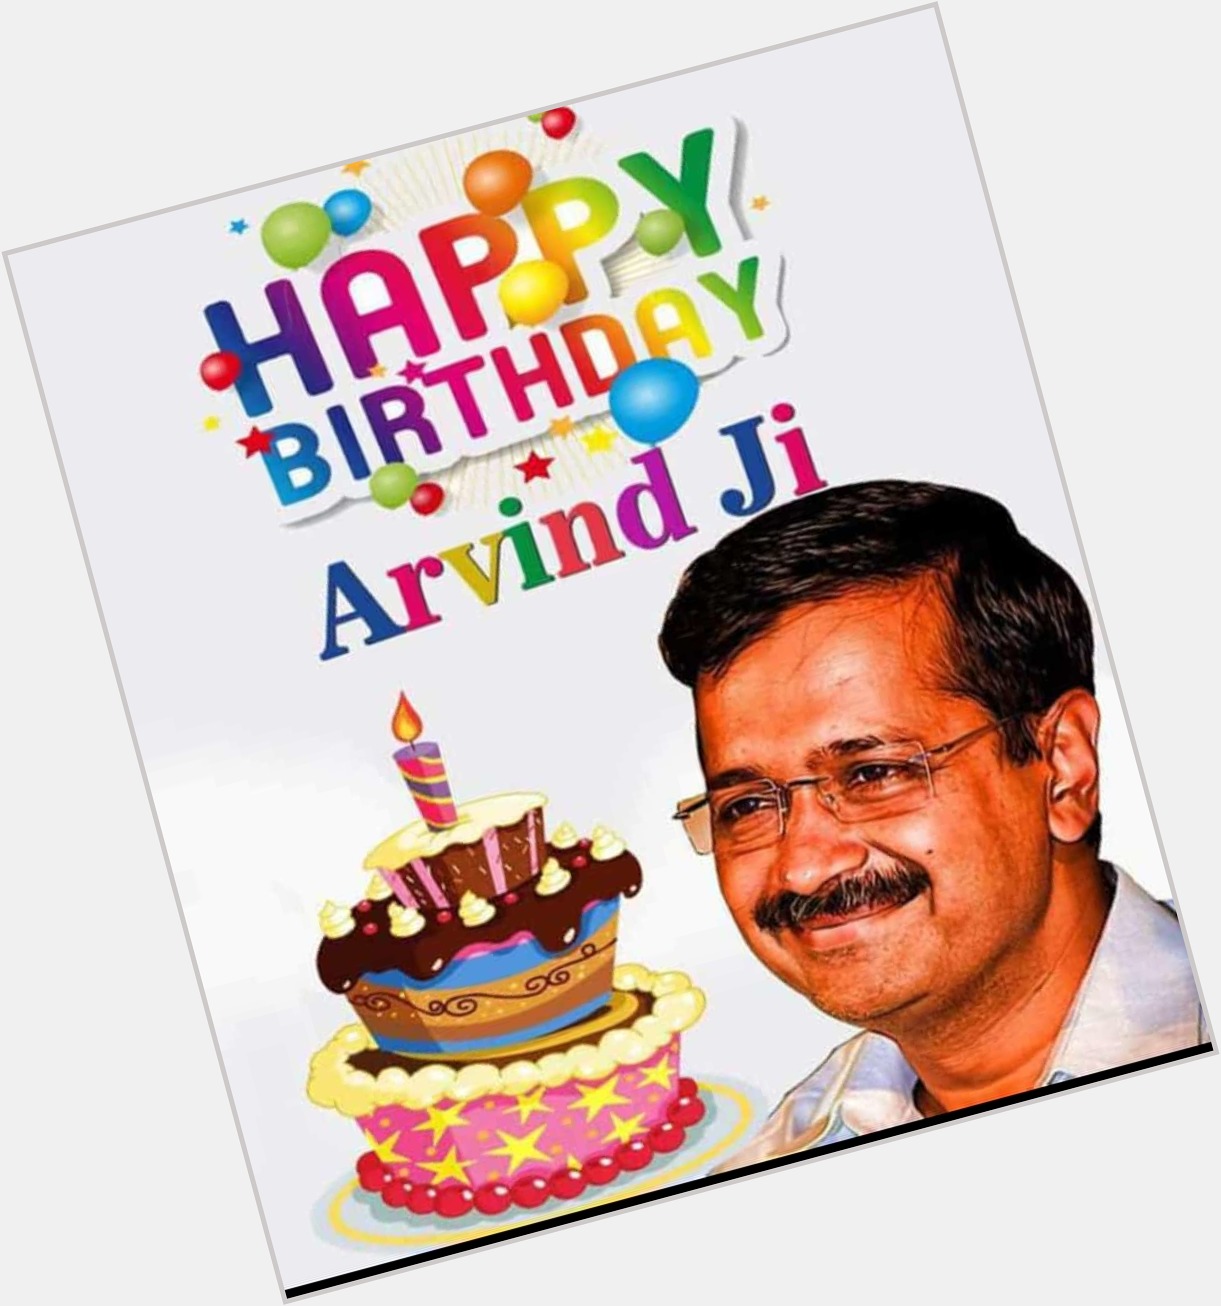 Happy Birthday Arvind Kejriwal ji
Delhi ke Dilo ka Raja    